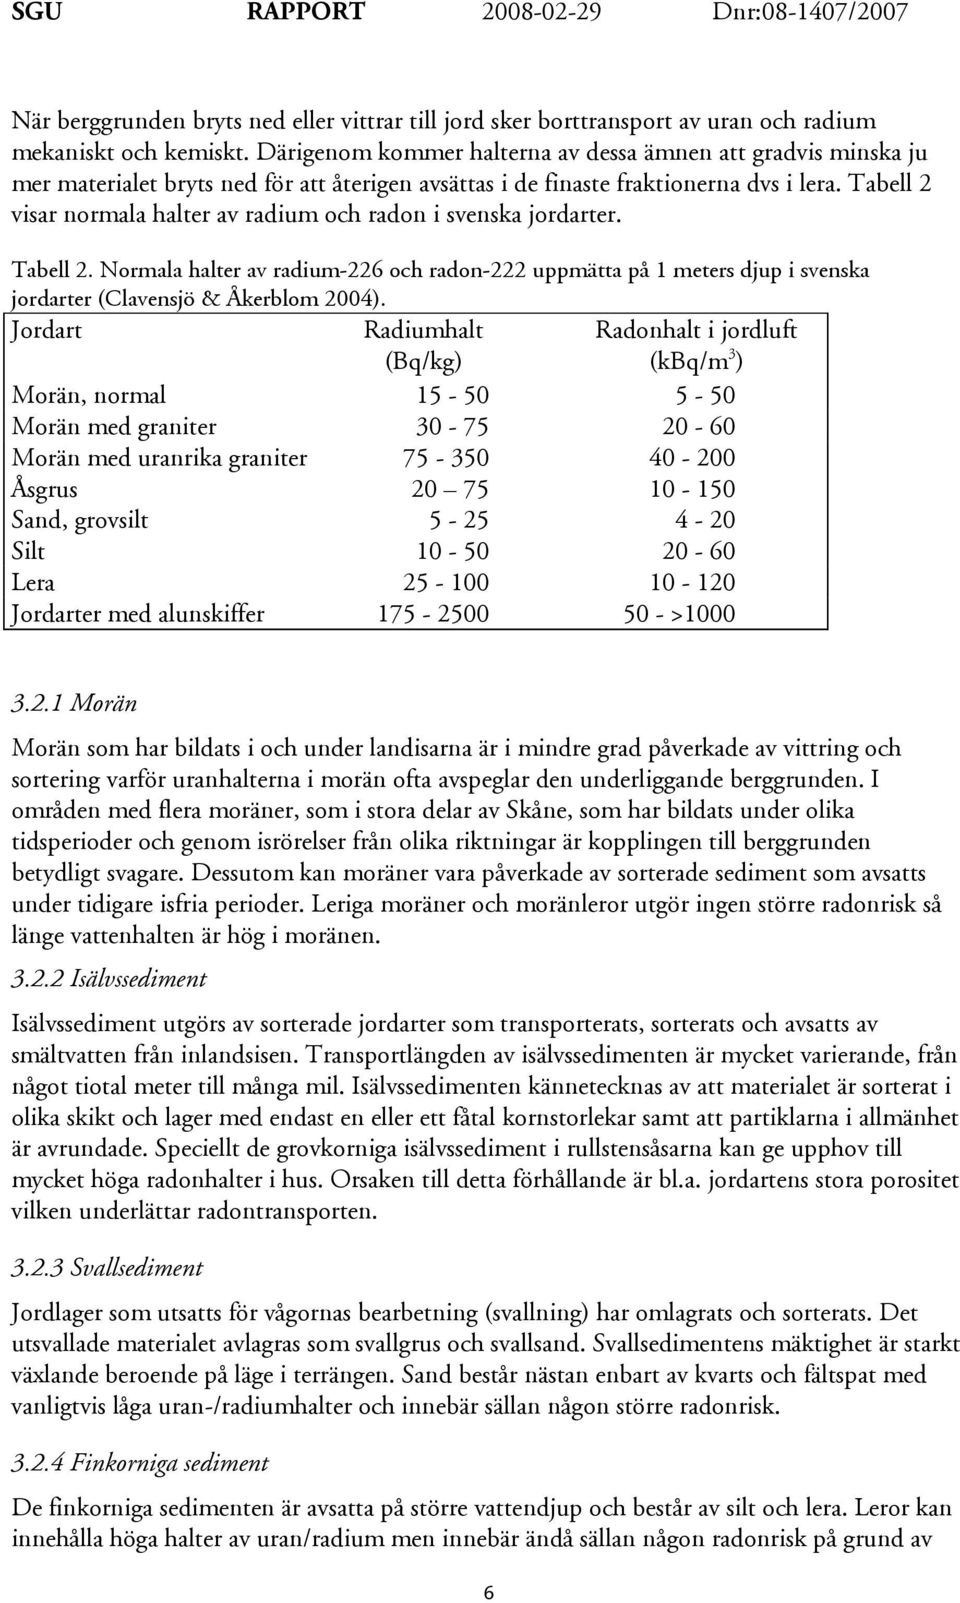 Tabell 2 visar normala halter av radium och radon i svenska jordarter. Tabell 2. Normala halter av radium-226 och radon-222 uppmätta på 1 meters djup i svenska jordarter (Clavensjö & Åkerblom 2004).